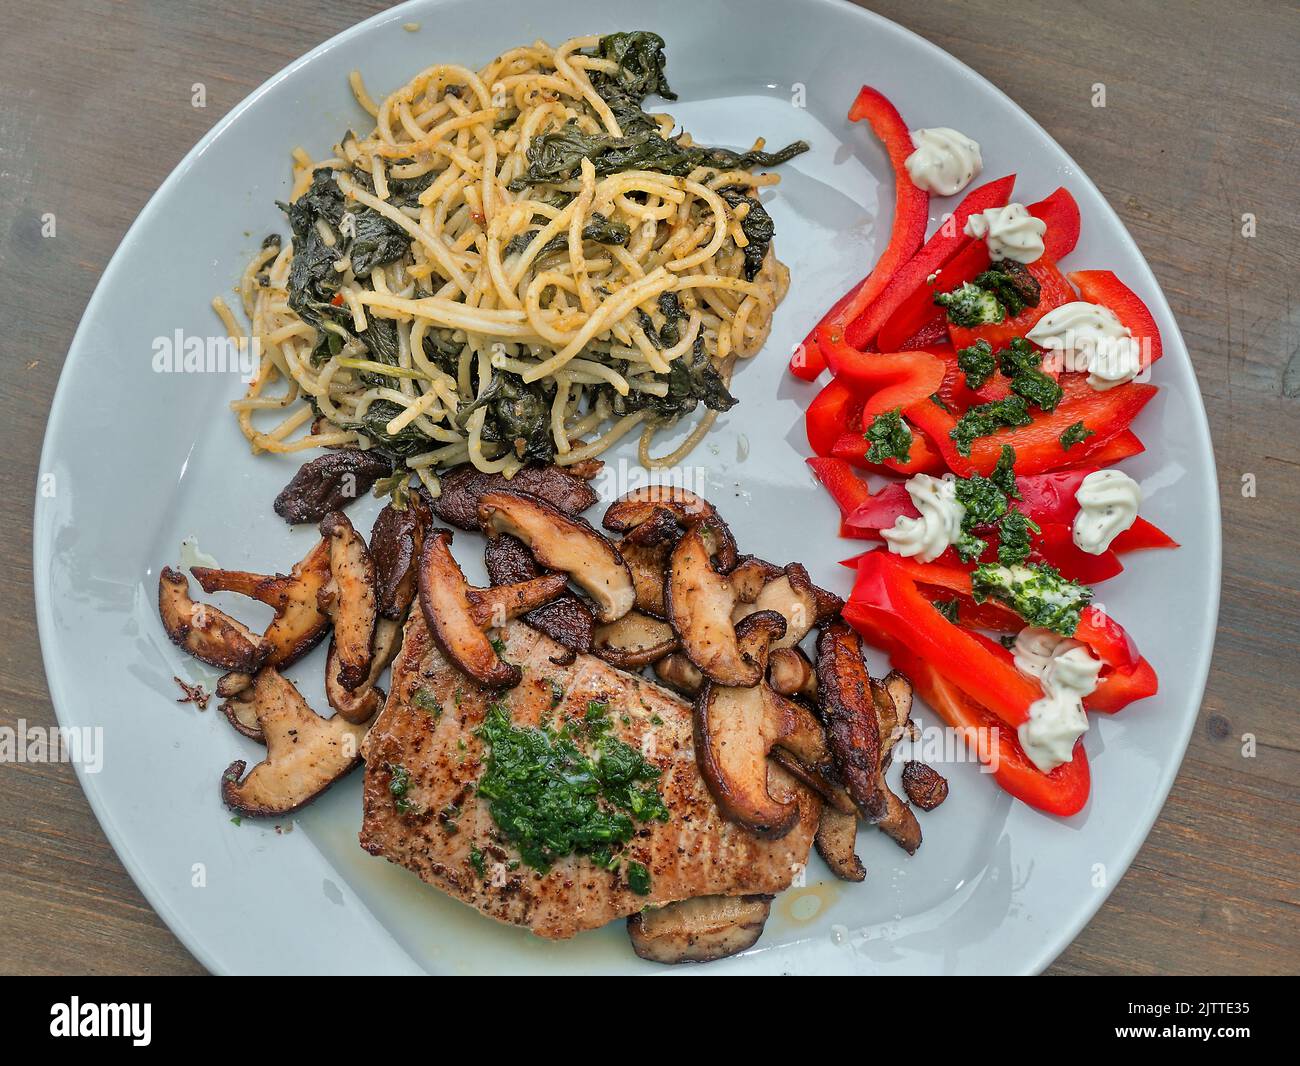 Vue de dessus d'une assiette à dîner gris clair avec thon poêlé, champignons shiitake rôtis, spaghetti avec câpres et feuilles d'épinards, et poivron rouge cru Banque D'Images